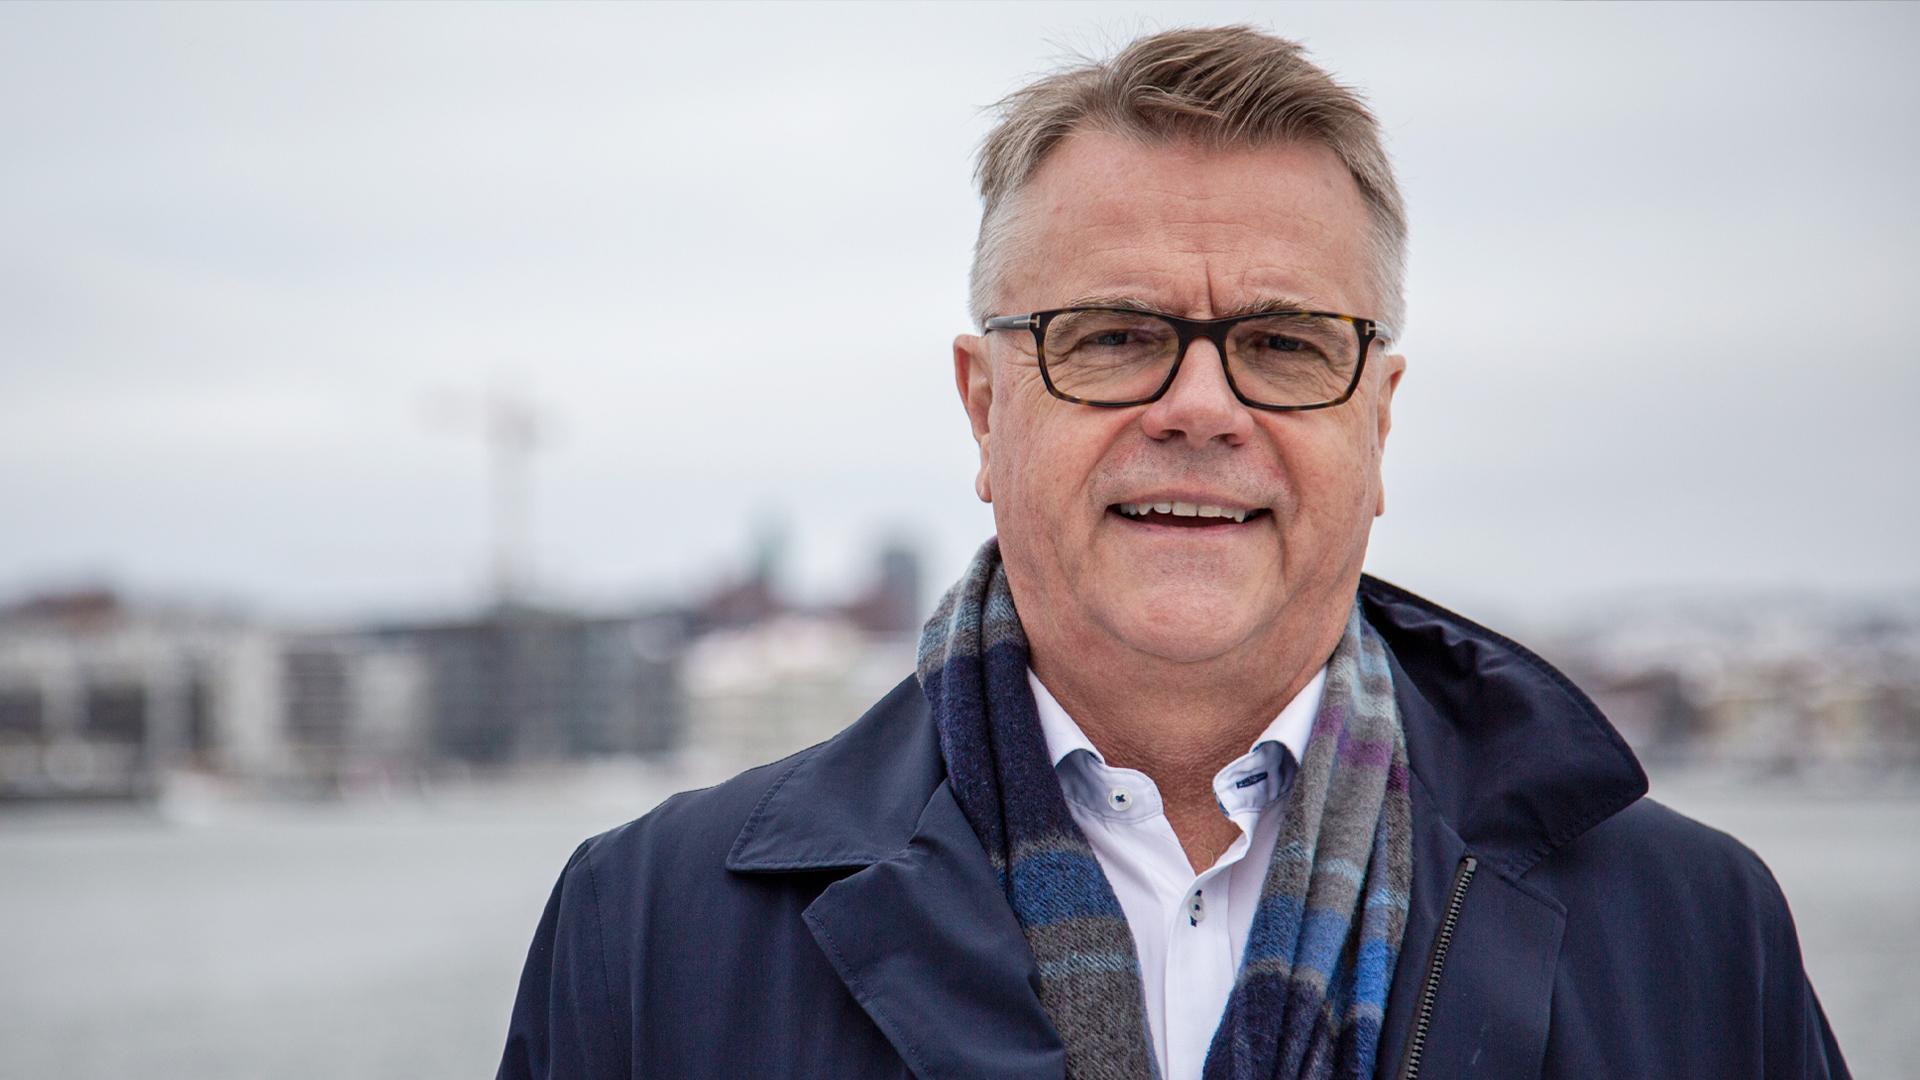 Ragnar Johansson, Managing Director Wallenius Sol